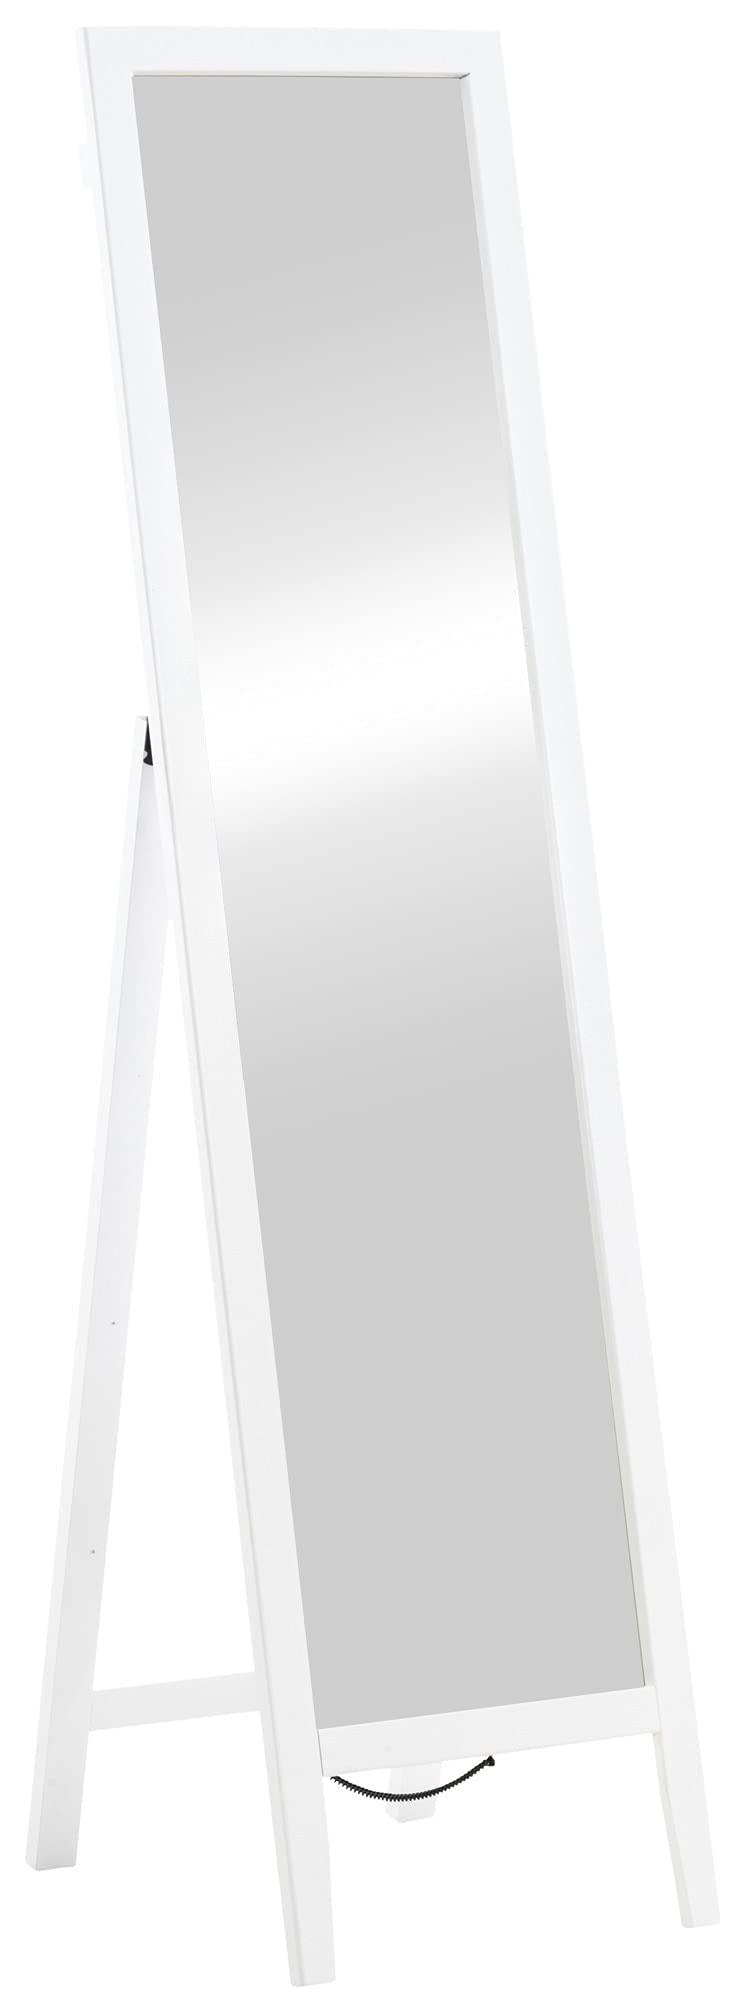 CLP Standspiegel Tandel I Bodenspiegel mit Holzrahmen I Ganzkörperspiegel kippbar I Spiegel mit Standfuß, Farbe:weiß